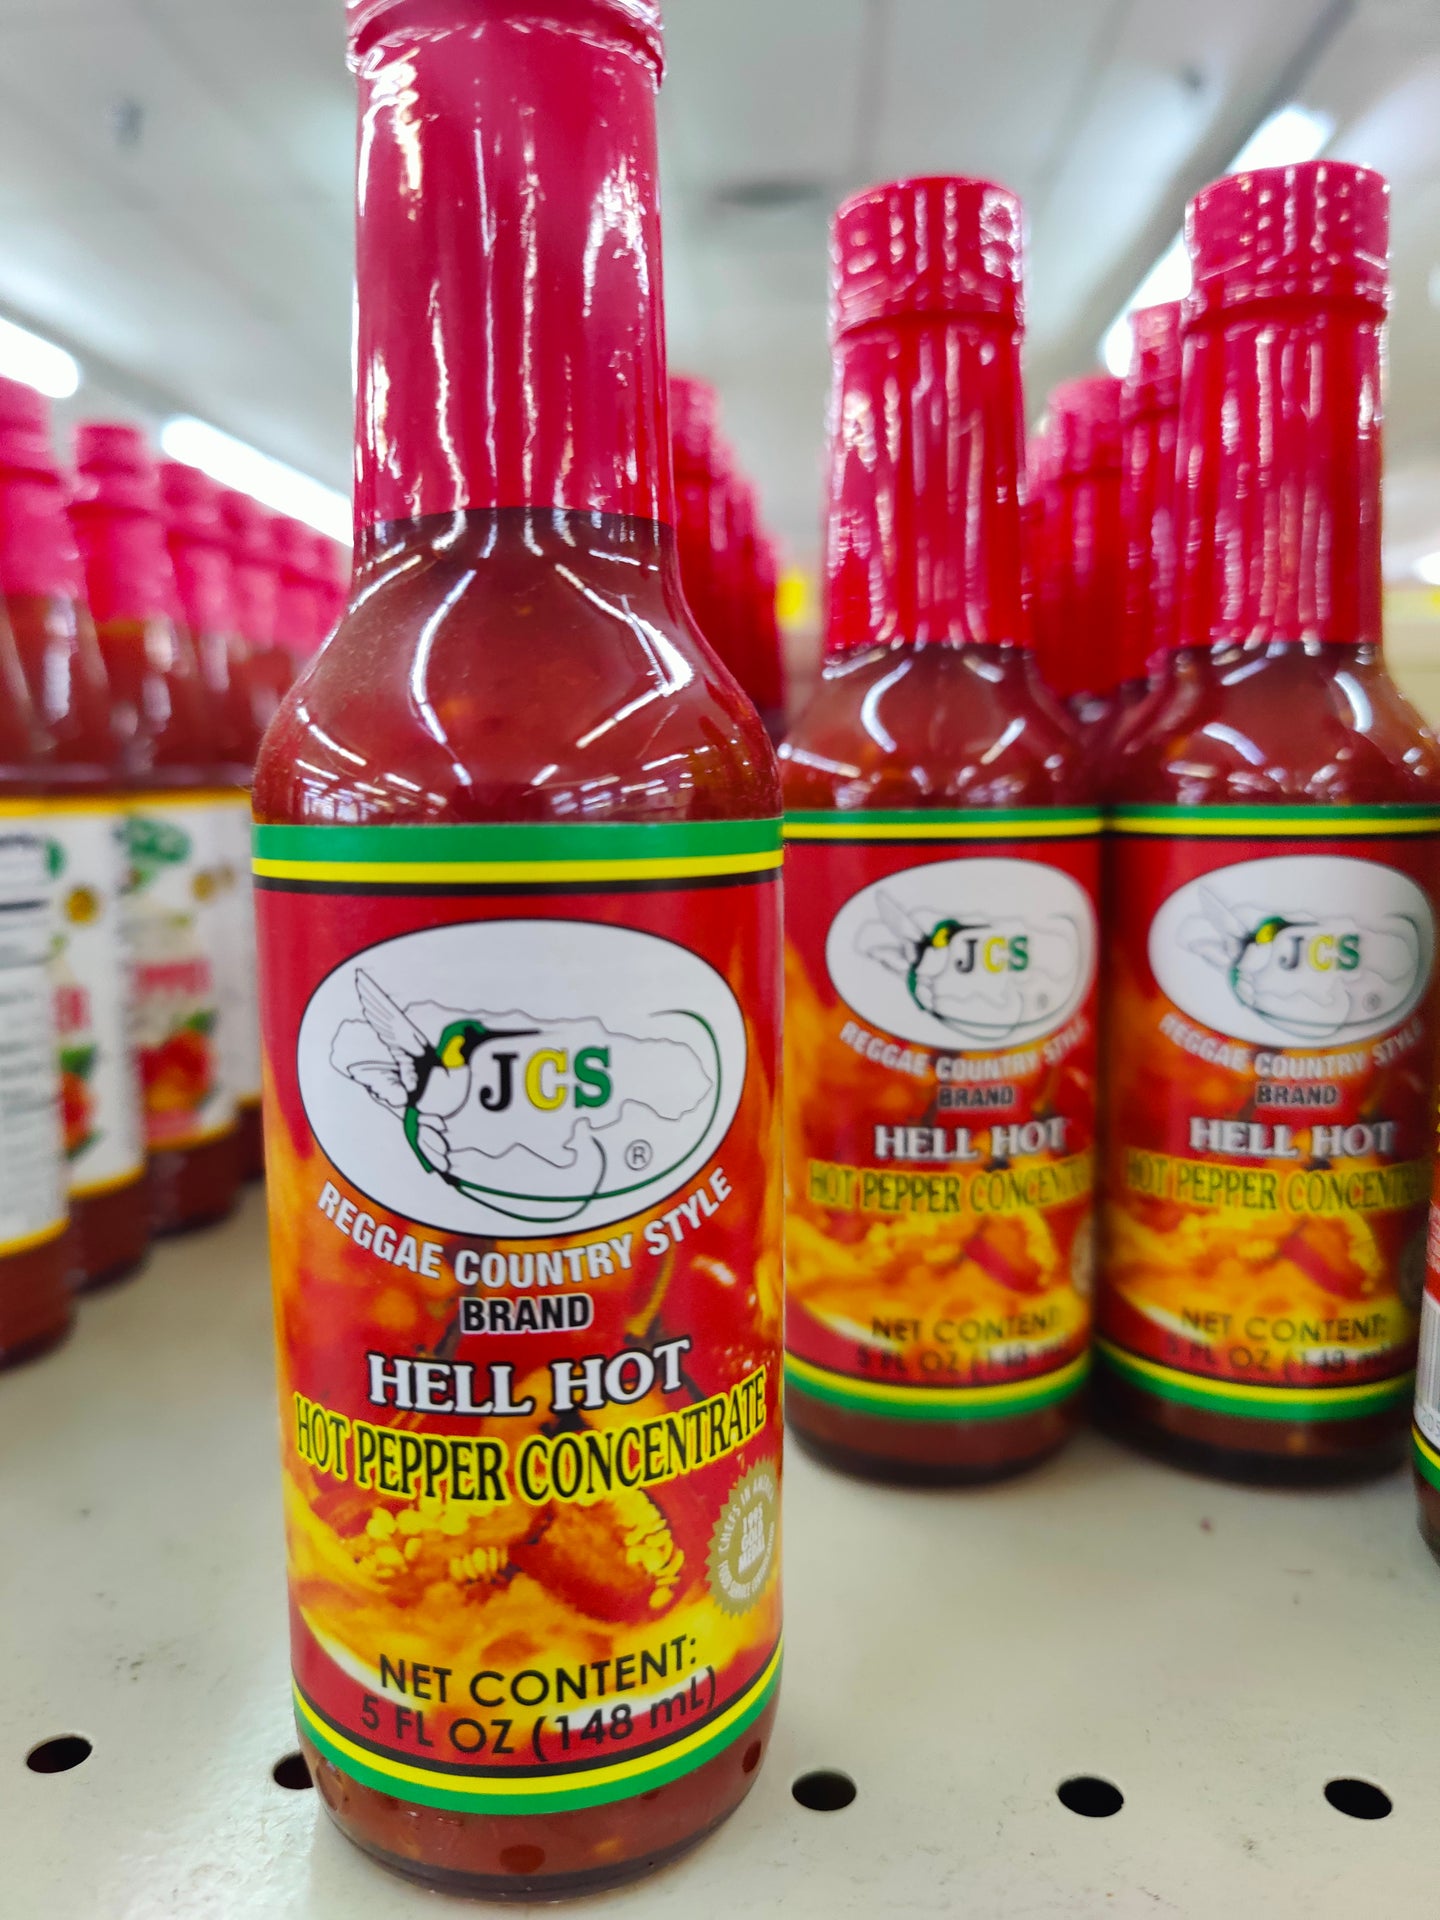 JCS Hell Hot Hot Pepper Sauce